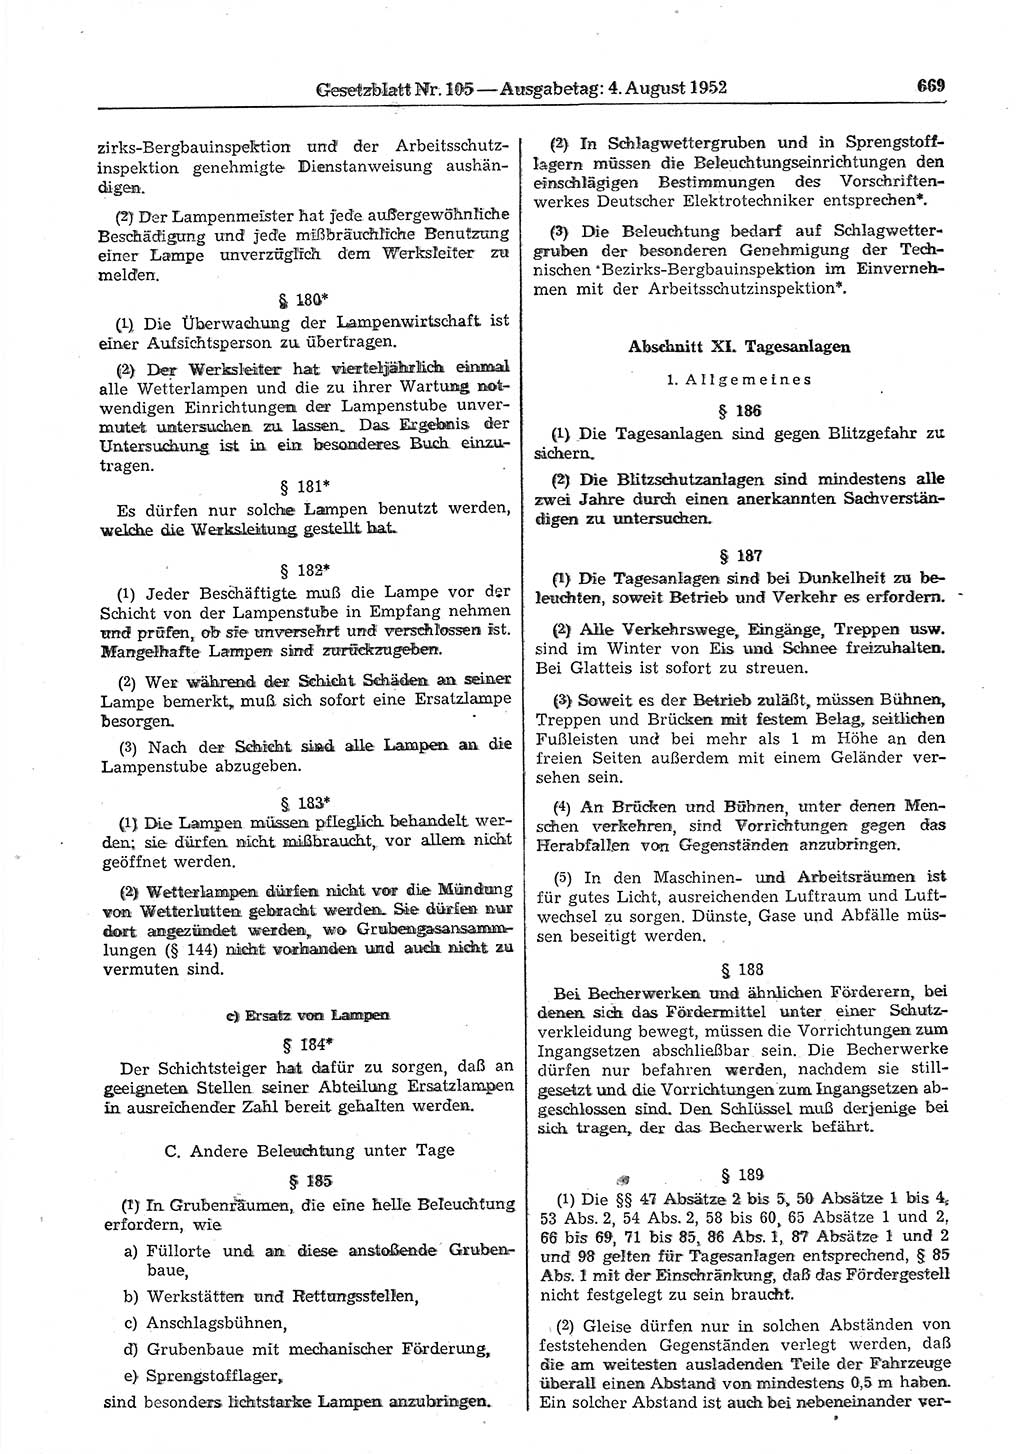 Gesetzblatt (GBl.) der Deutschen Demokratischen Republik (DDR) 1952, Seite 669 (GBl. DDR 1952, S. 669)